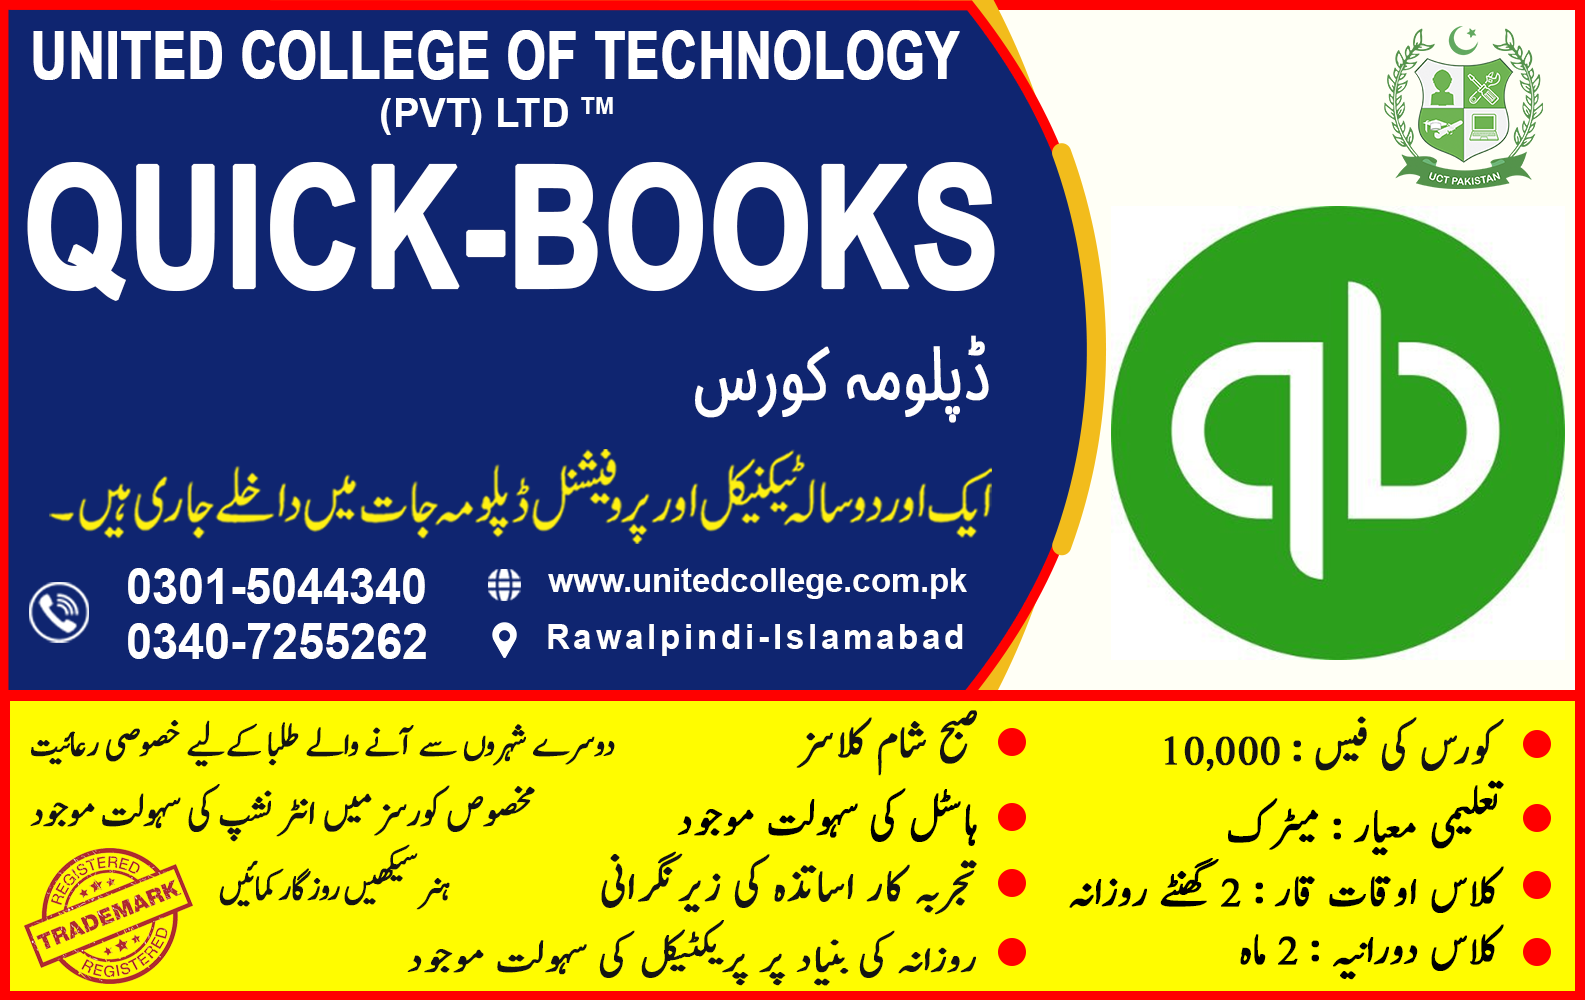 QUICK-BOOKS COURSE IN RAWALPINDI ISLAMABAD